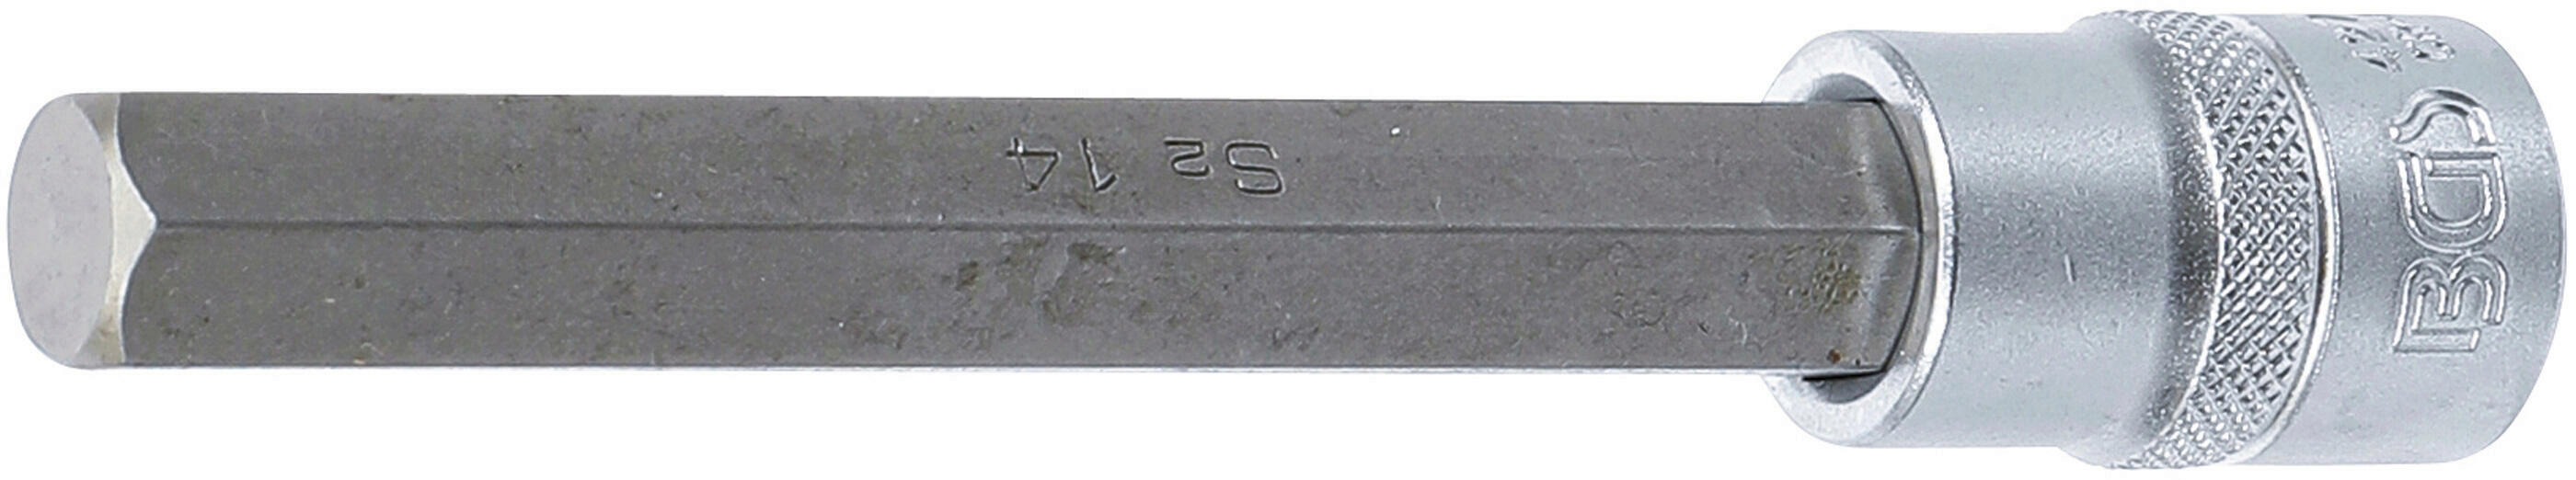 Bit-Einsatz | Länge 140 mm | Antrieb Innenvierkant 12,5 mm (1/2") | Innensechskant 14 mm